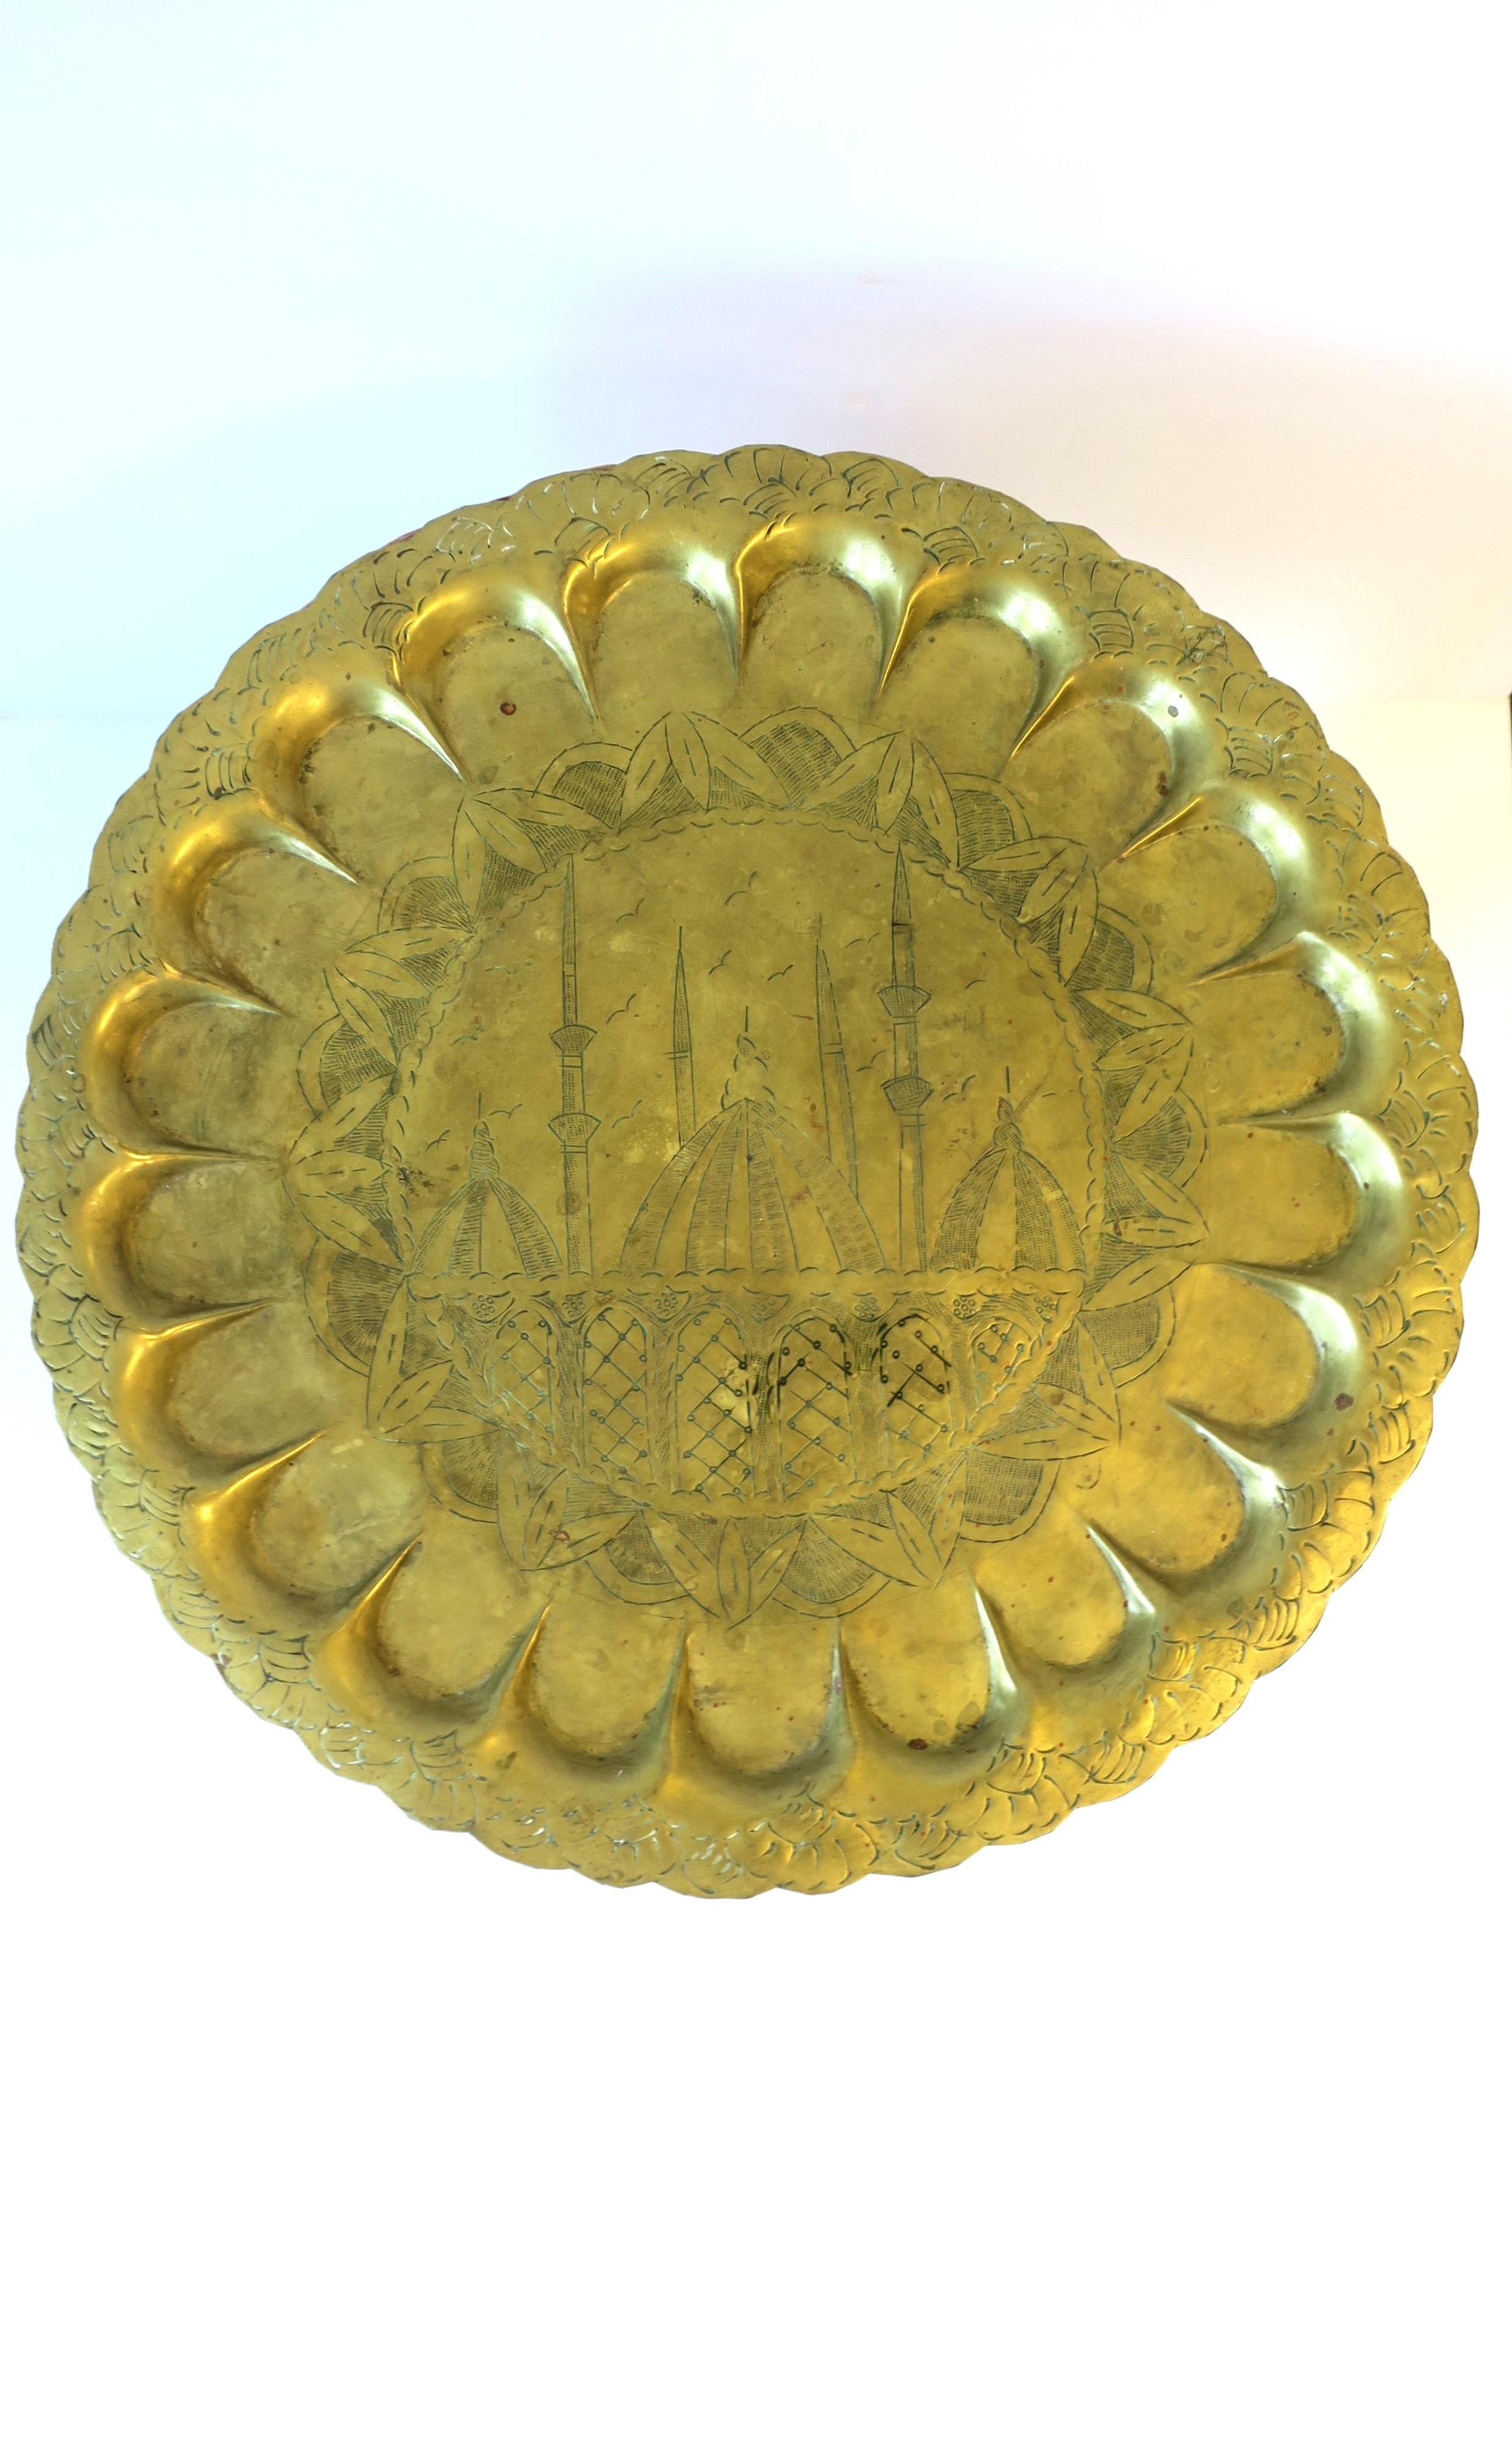 Ein rundes Serviertablett aus Messing oder ein dekoratives Wandkunstwerk, circa Anfang bis Mitte des 20. Jahrhunderts. Das runde Messingtablett hat ein maurisches oder mughalisches Design. Hervorragend geeignet als Serviertablett (wie abgebildet)